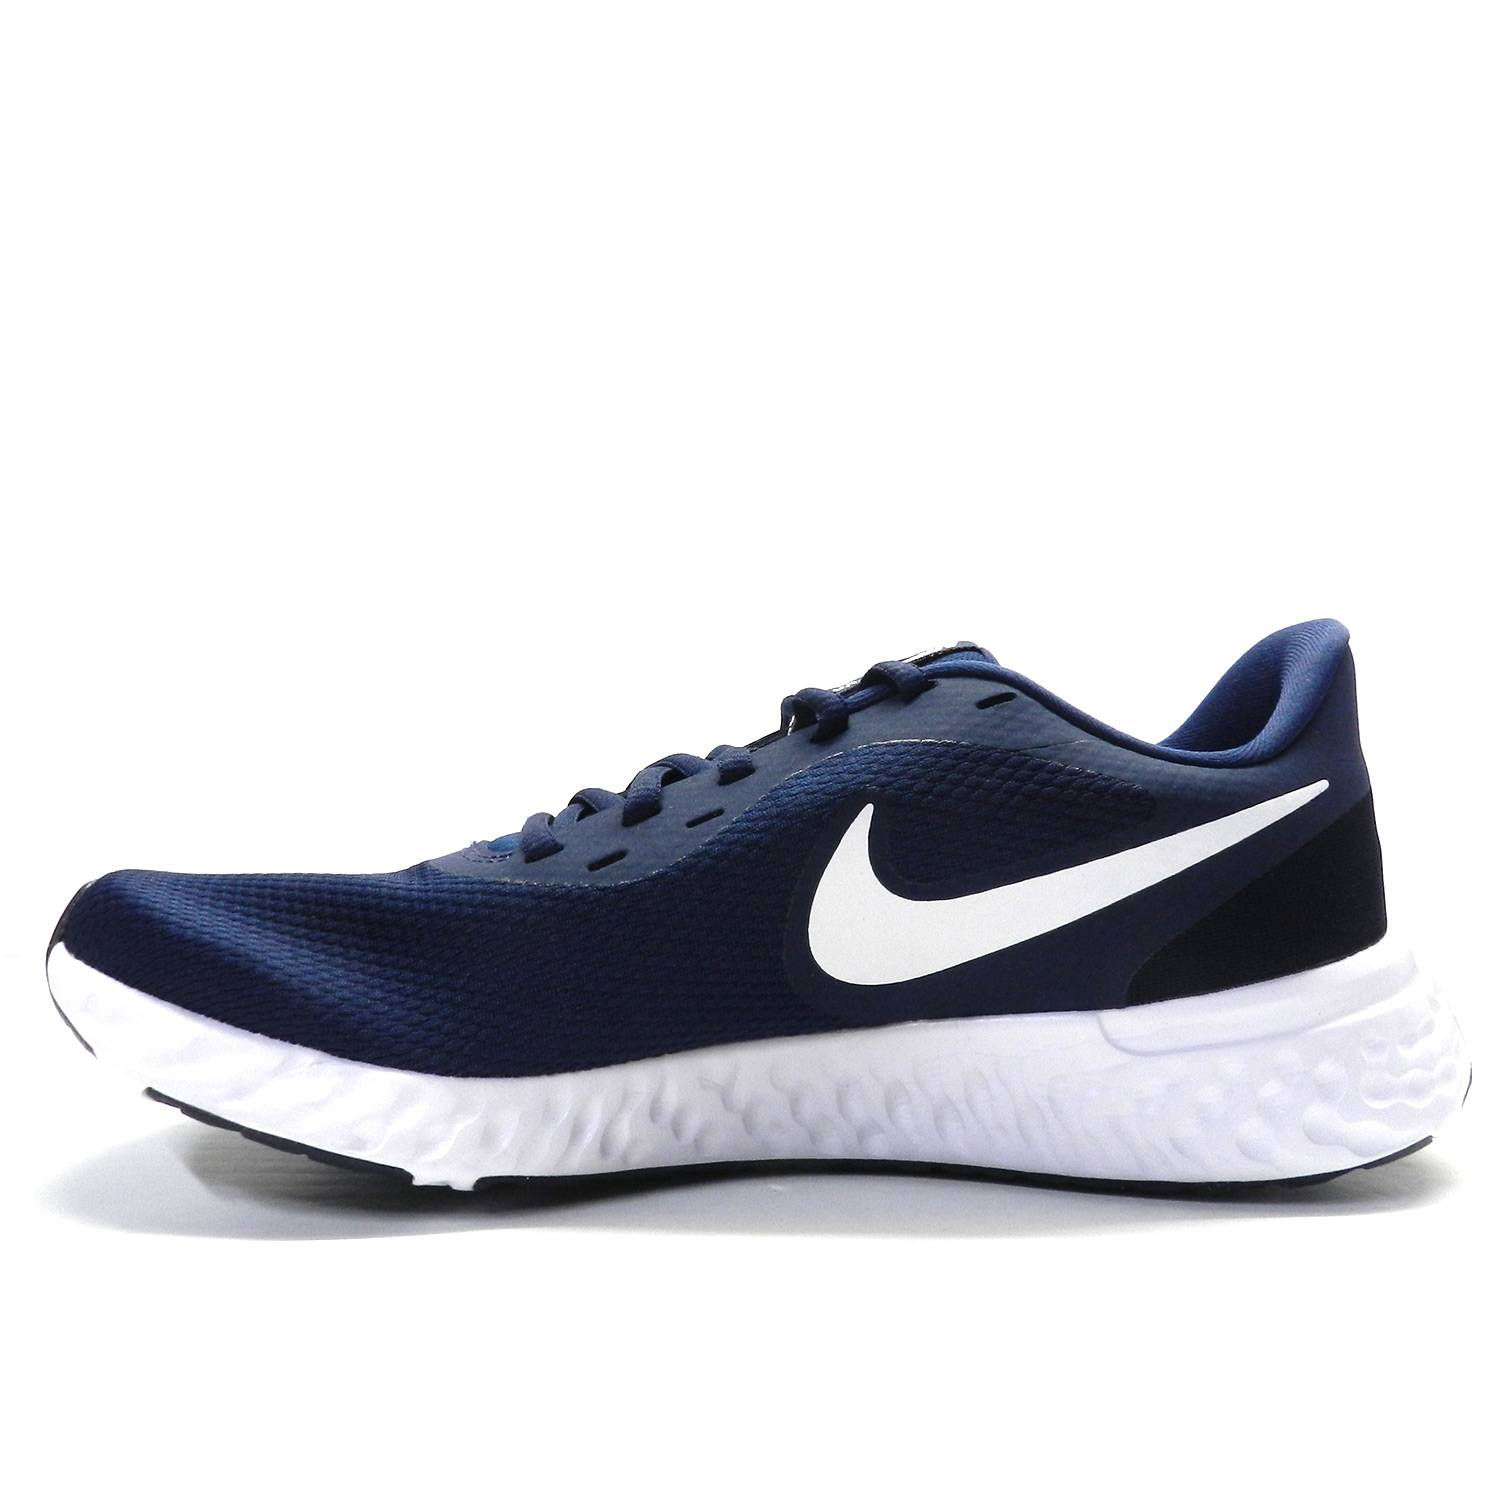 Zapatillas de la marca Nike, modelo Nike Revolution BQ3204 en color azul oscuro. Zapatilla deportiva estilo running elaborada en malla transpirable de color azul con logo en blanco. Mediasuela de espuma suave y suela exterior de goma para una tracción duradera.